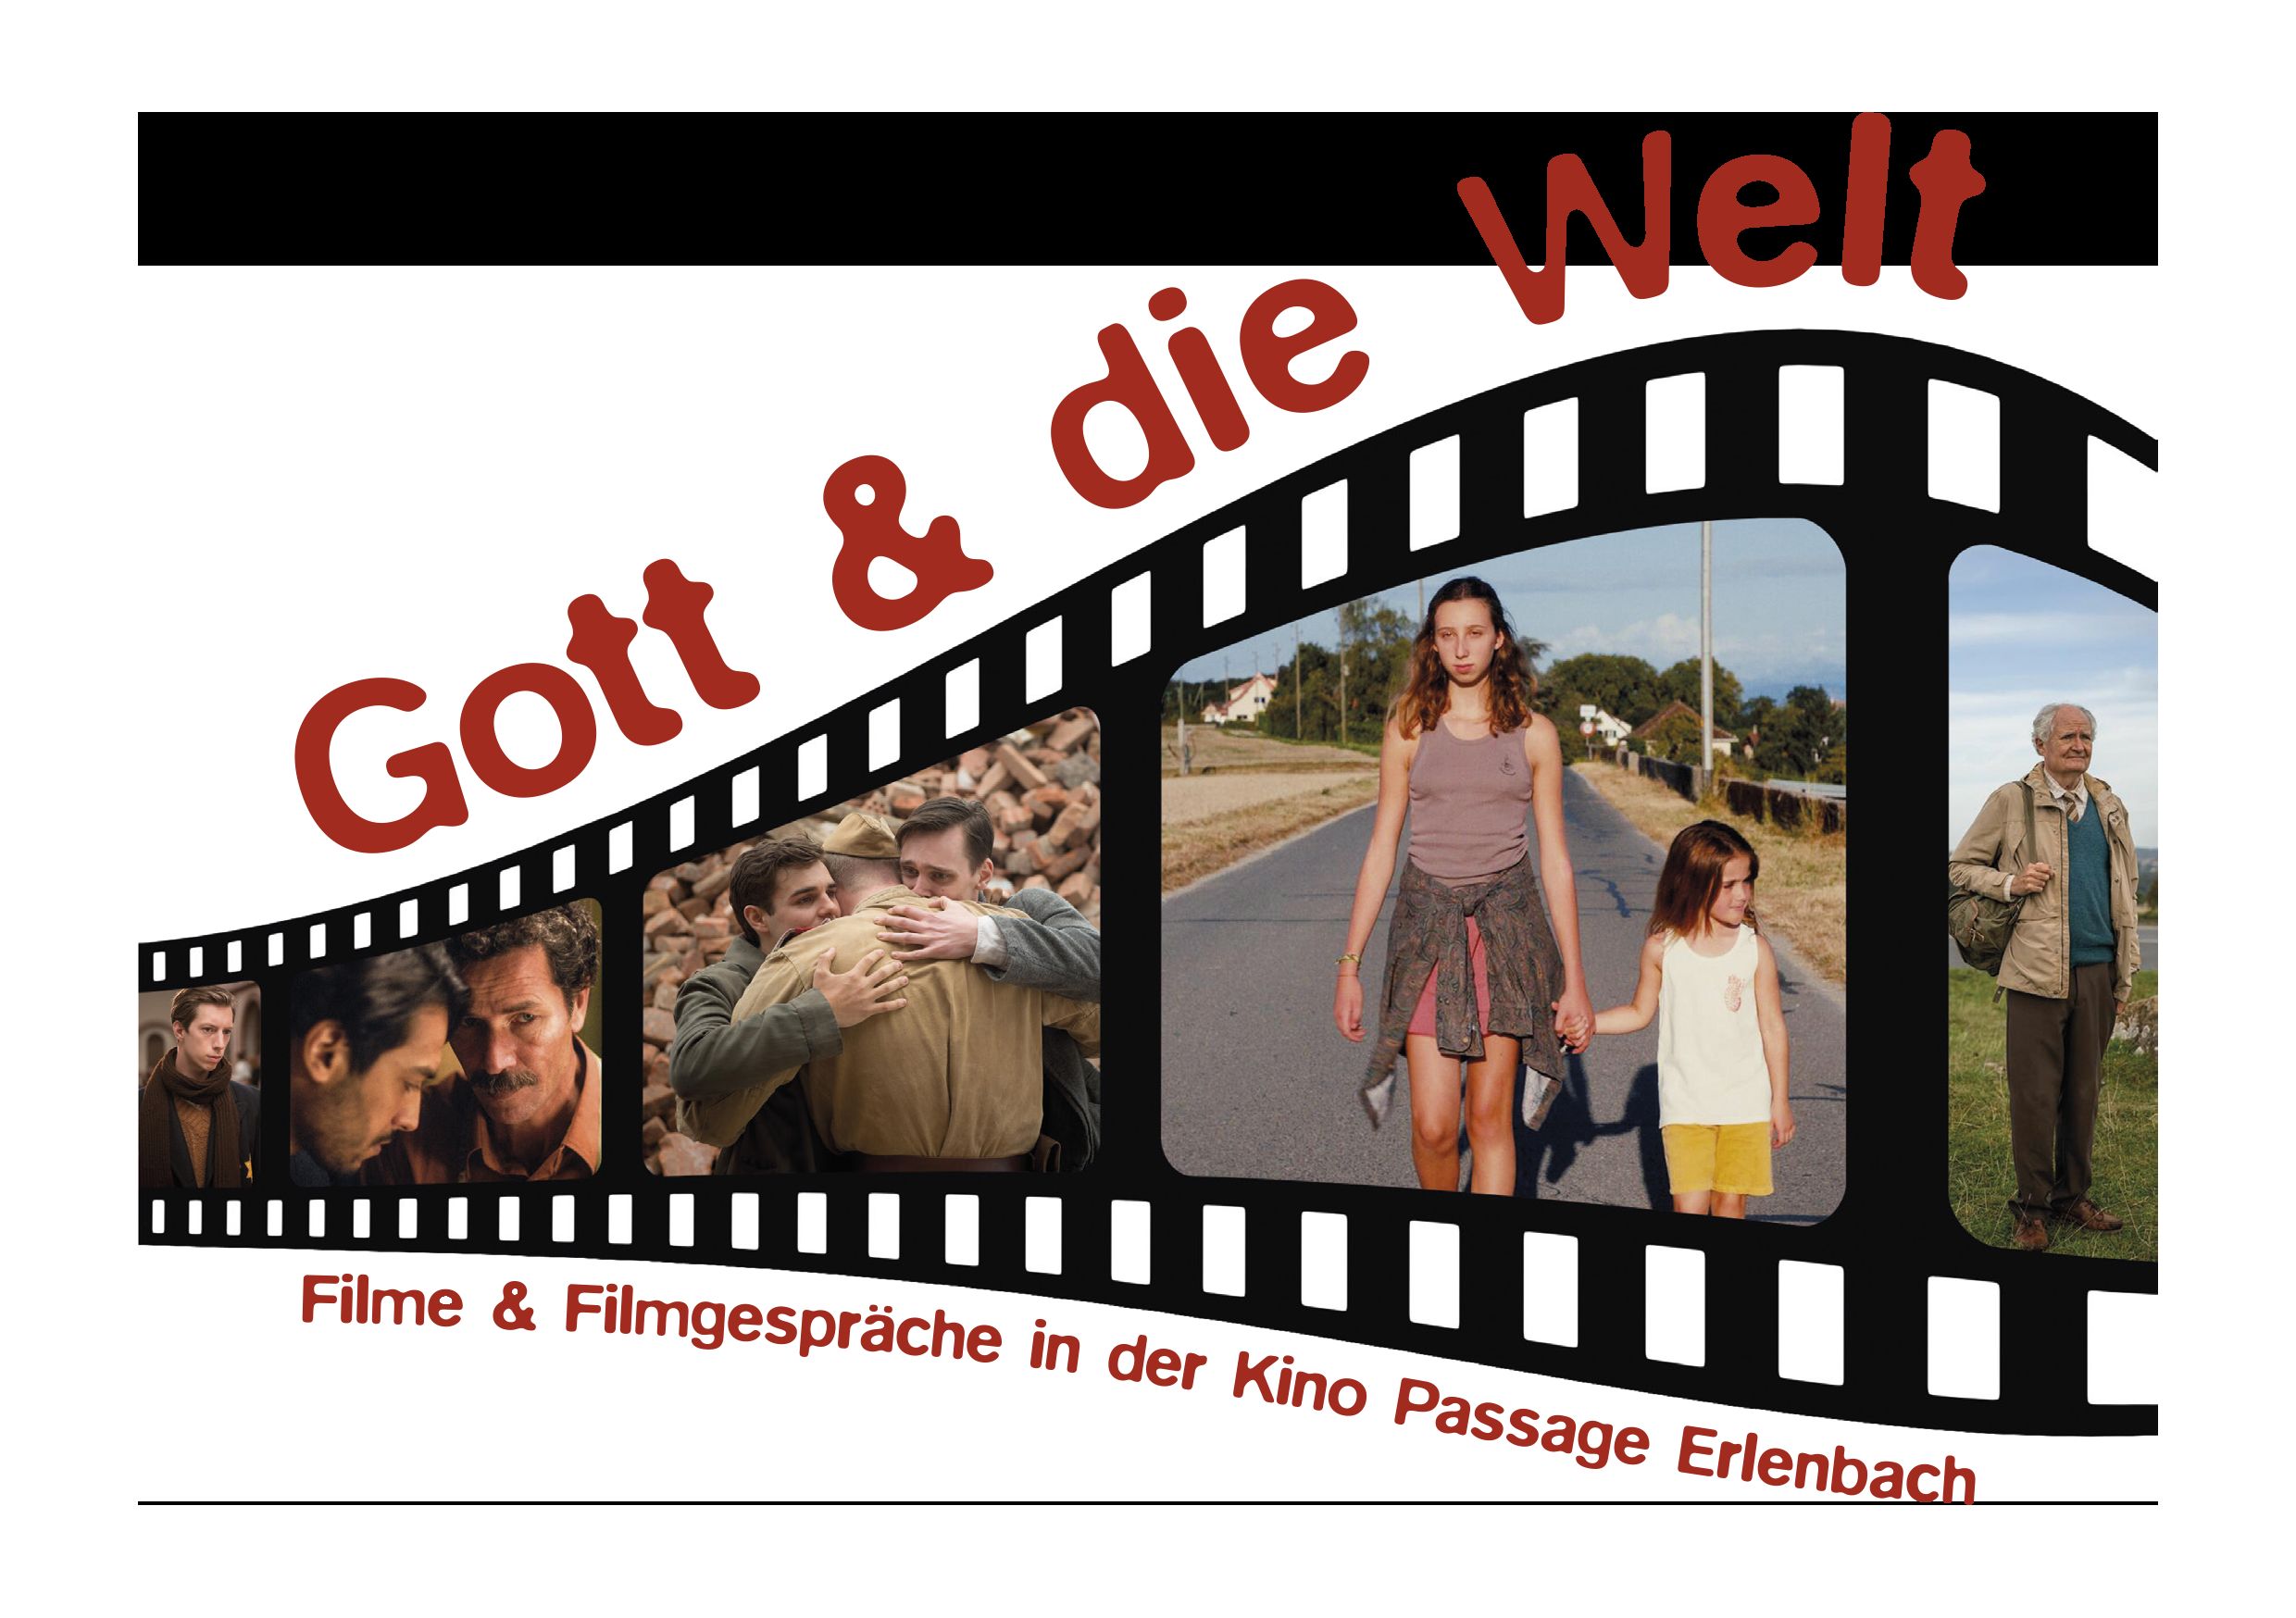 Gott und die Welt - Filme und Filmgespräch in der Kino Passage Erlenbach